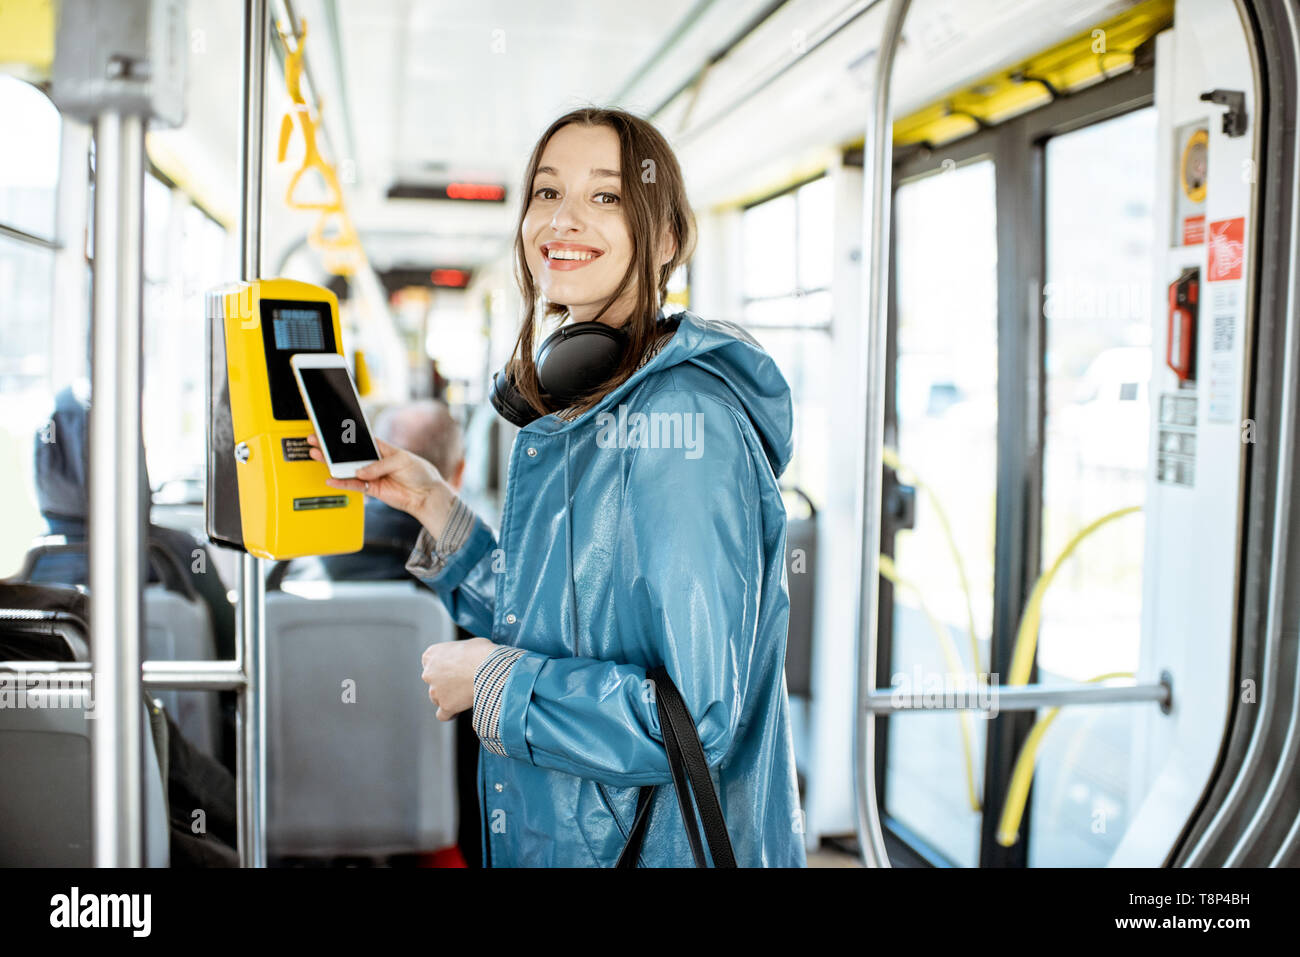 Portarit eines junge lächelnde Frau Zahlung conctactless mit Smartphone für die öffentlichen Verkehrsmittel in der Straßenbahn Stockfoto